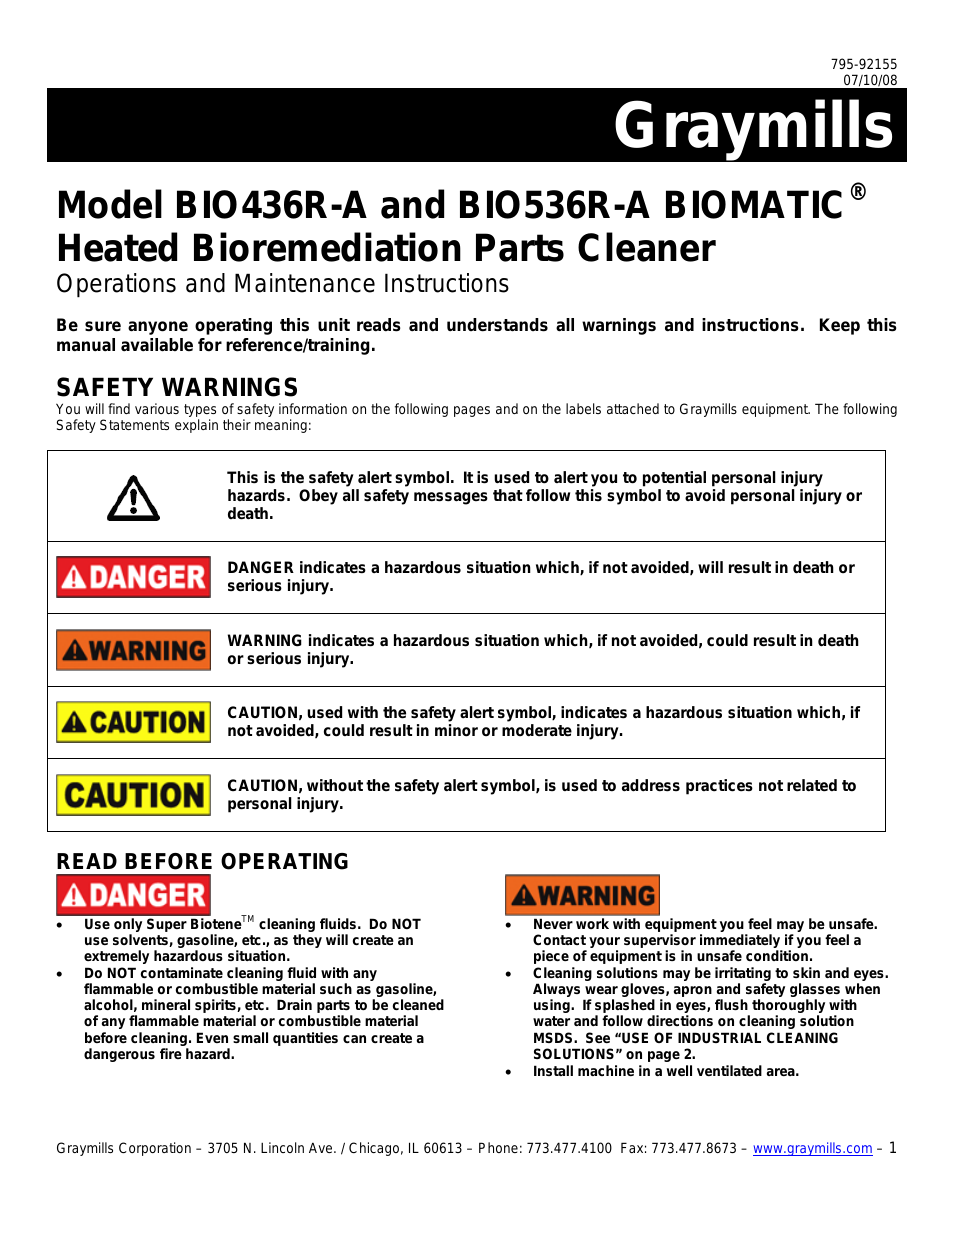 Bio536r-A OMI